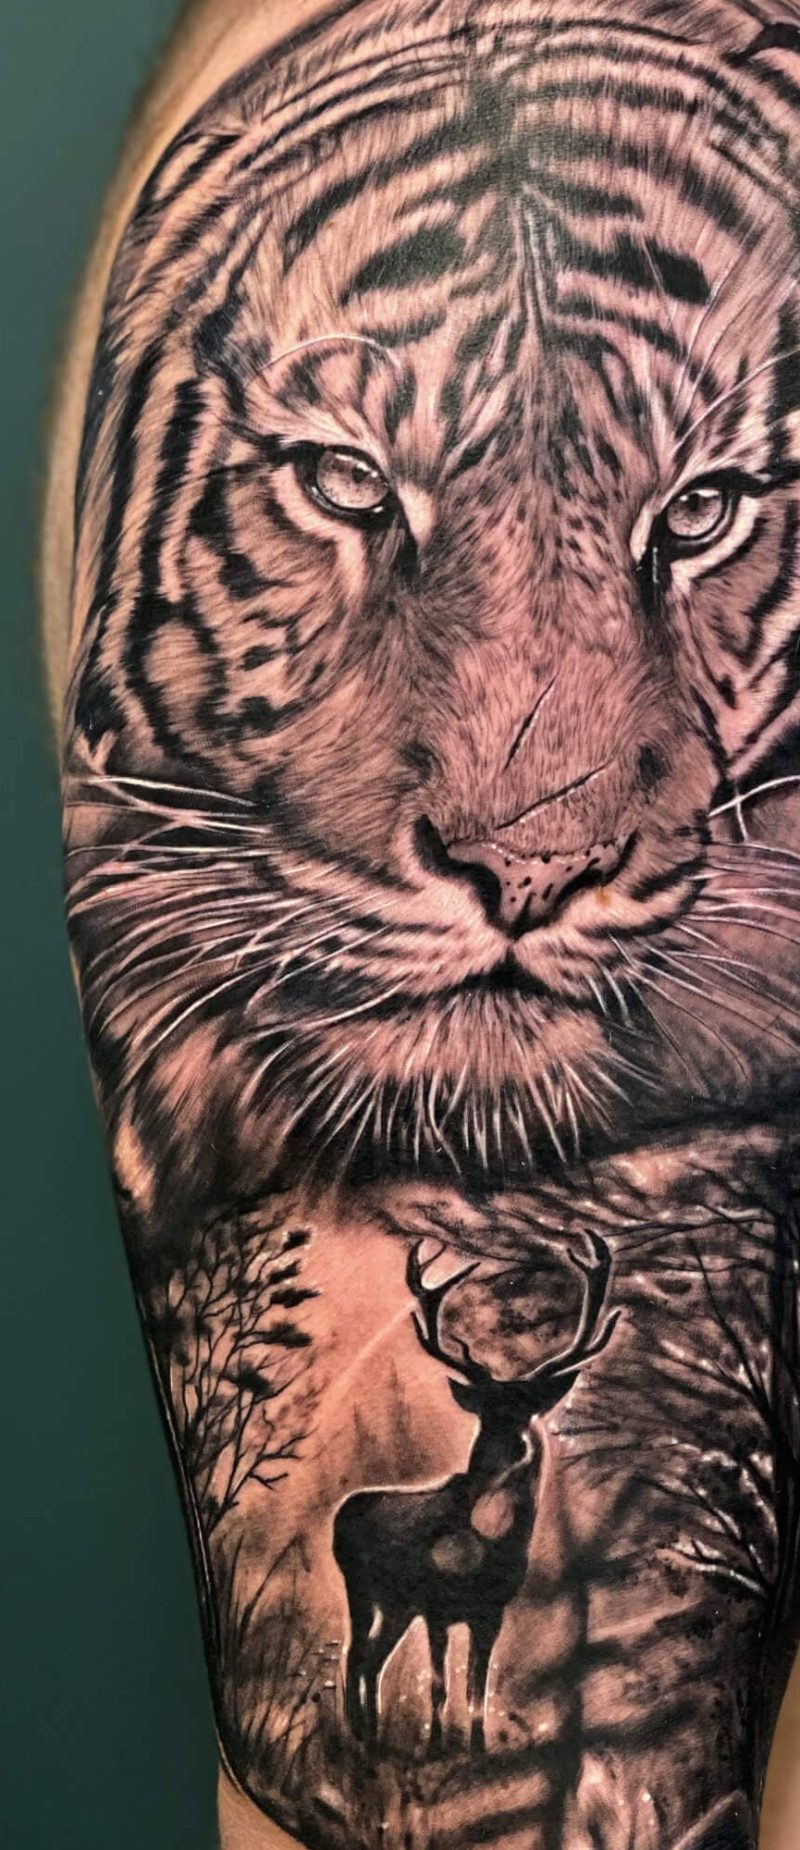 Tatuaje tigre y venado